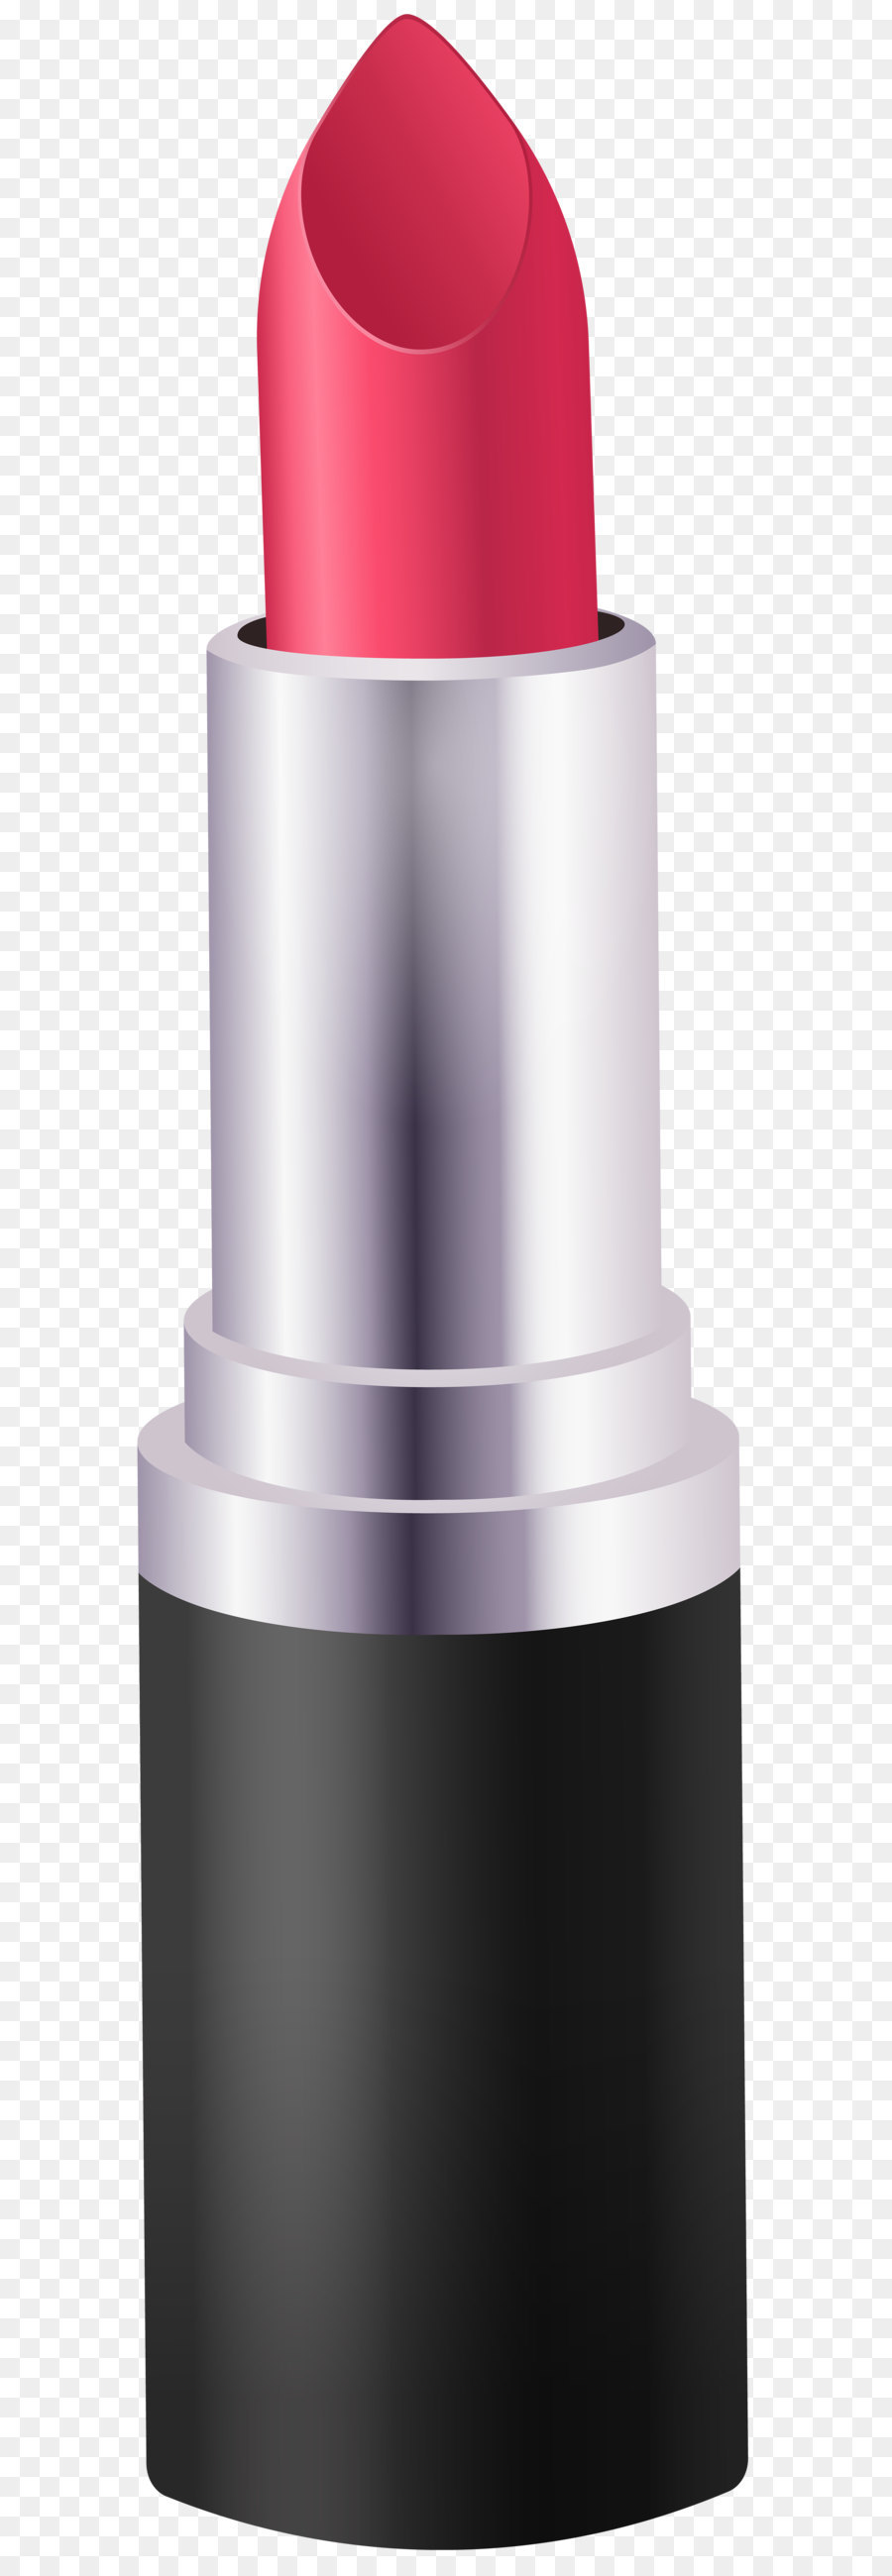 MAC Cosmetics Rossetto ombretto crema Solare - Rossetto PNG Clip Art